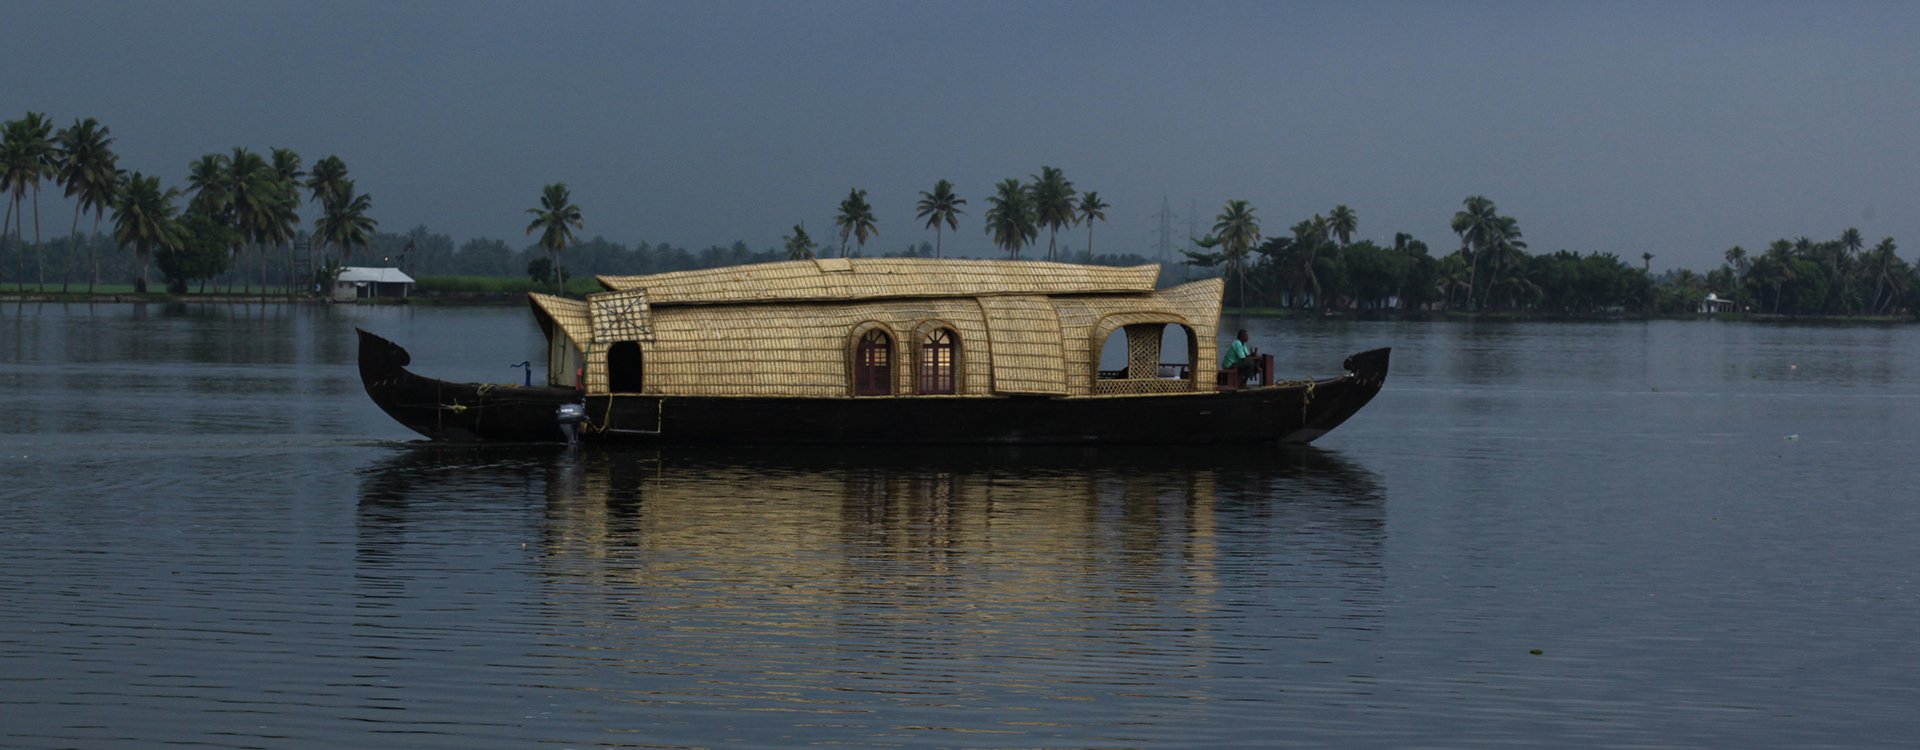 India_Kerala_Backwaters